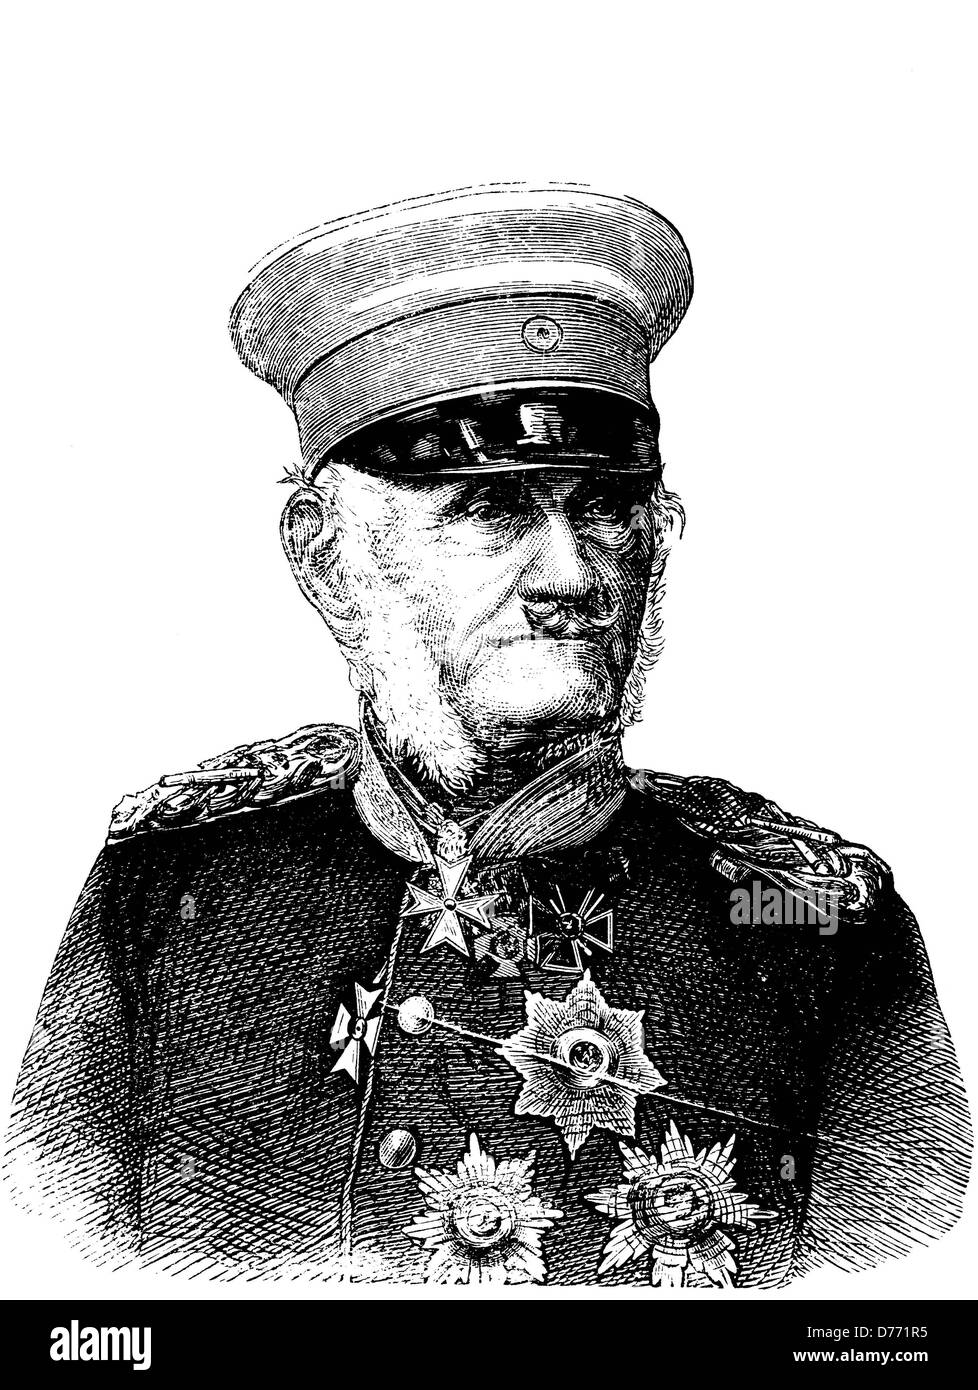 Le Maréchal Friedrich Graf von Wrangel, 1784 - 1877, le feld-maréchal prussien, historique gravure sur bois, vers 1880 Banque D'Images